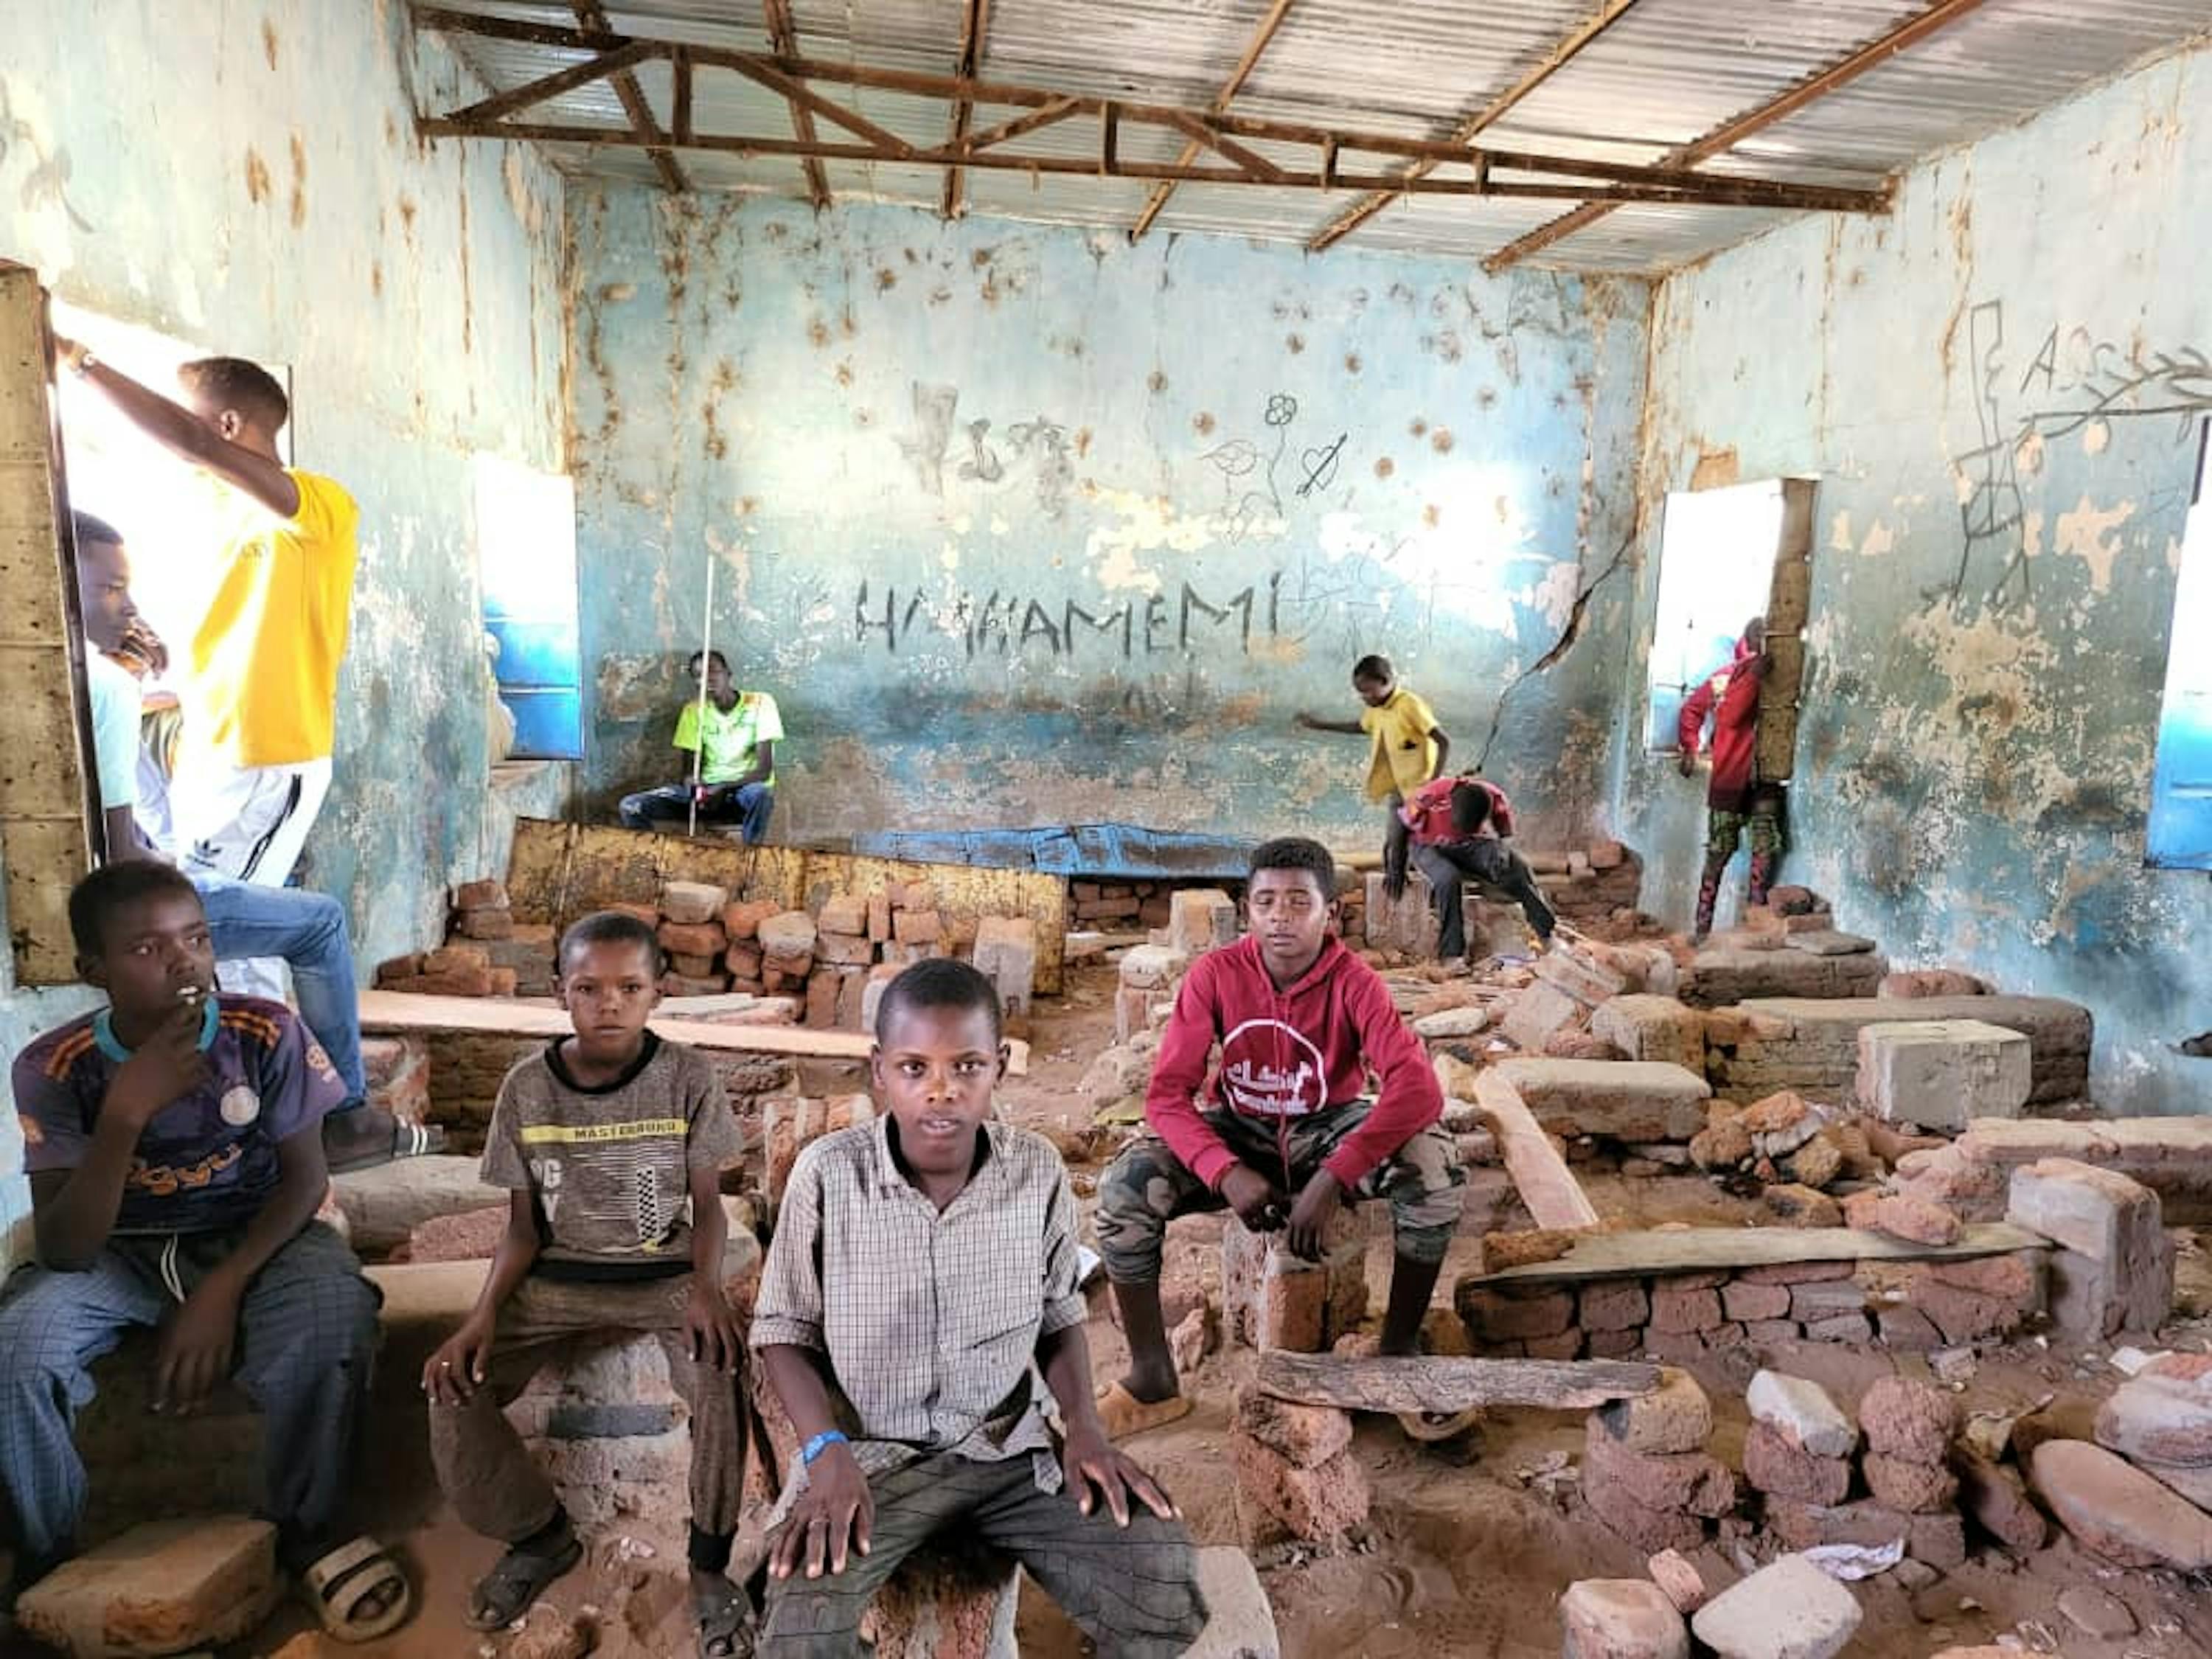 Per fuggire dalla violenza scoppiata in Sudan nell'aprile 2023, circa 9 mila persone si sono rifugiate nella Repubblica Centrafricana. Qui alcuni bambini giocano in una scuola abbandonata